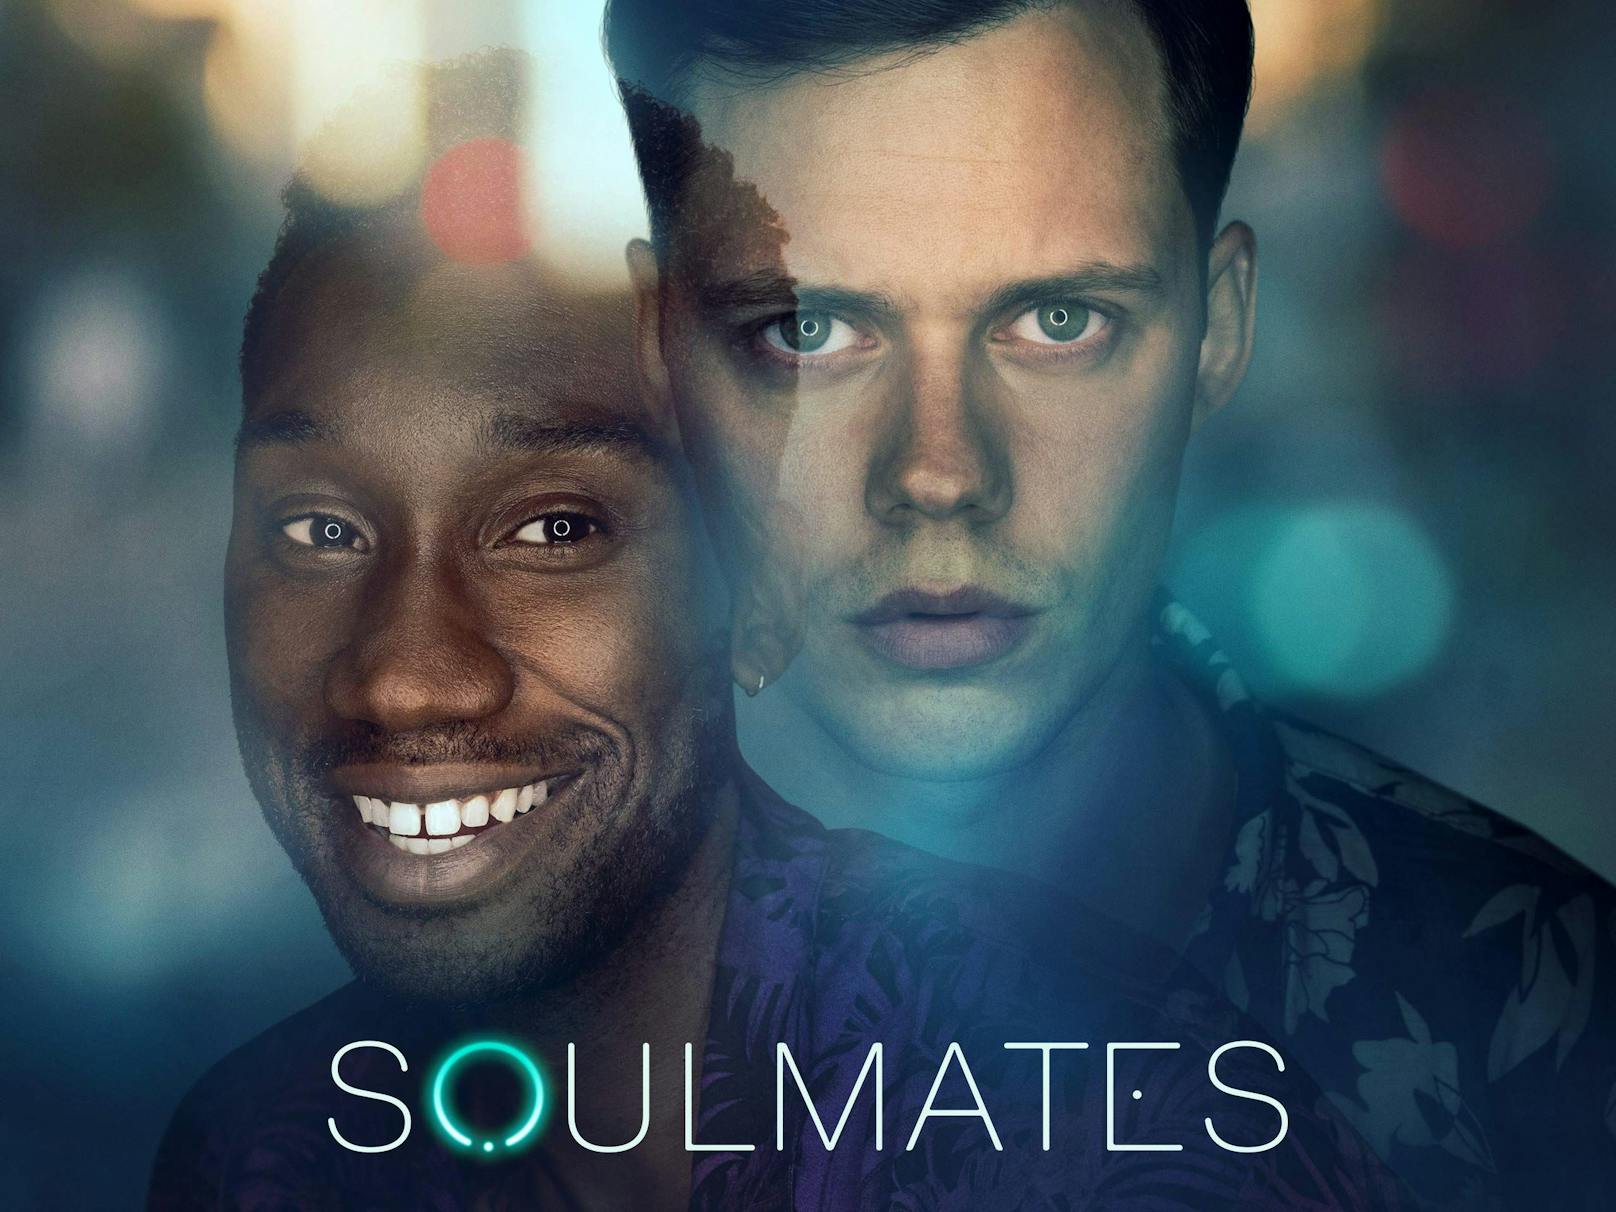 <strong>"Soulmates" auf Amazon Prime:</strong> In dieser Anthologieserie geht es um Personen, die mit Hilfe einer App ihren Seelenverwandten finden wollen. Jede der sechs Episoden  hat eine andere Besetzung und erzählt eine neue Geschichte.